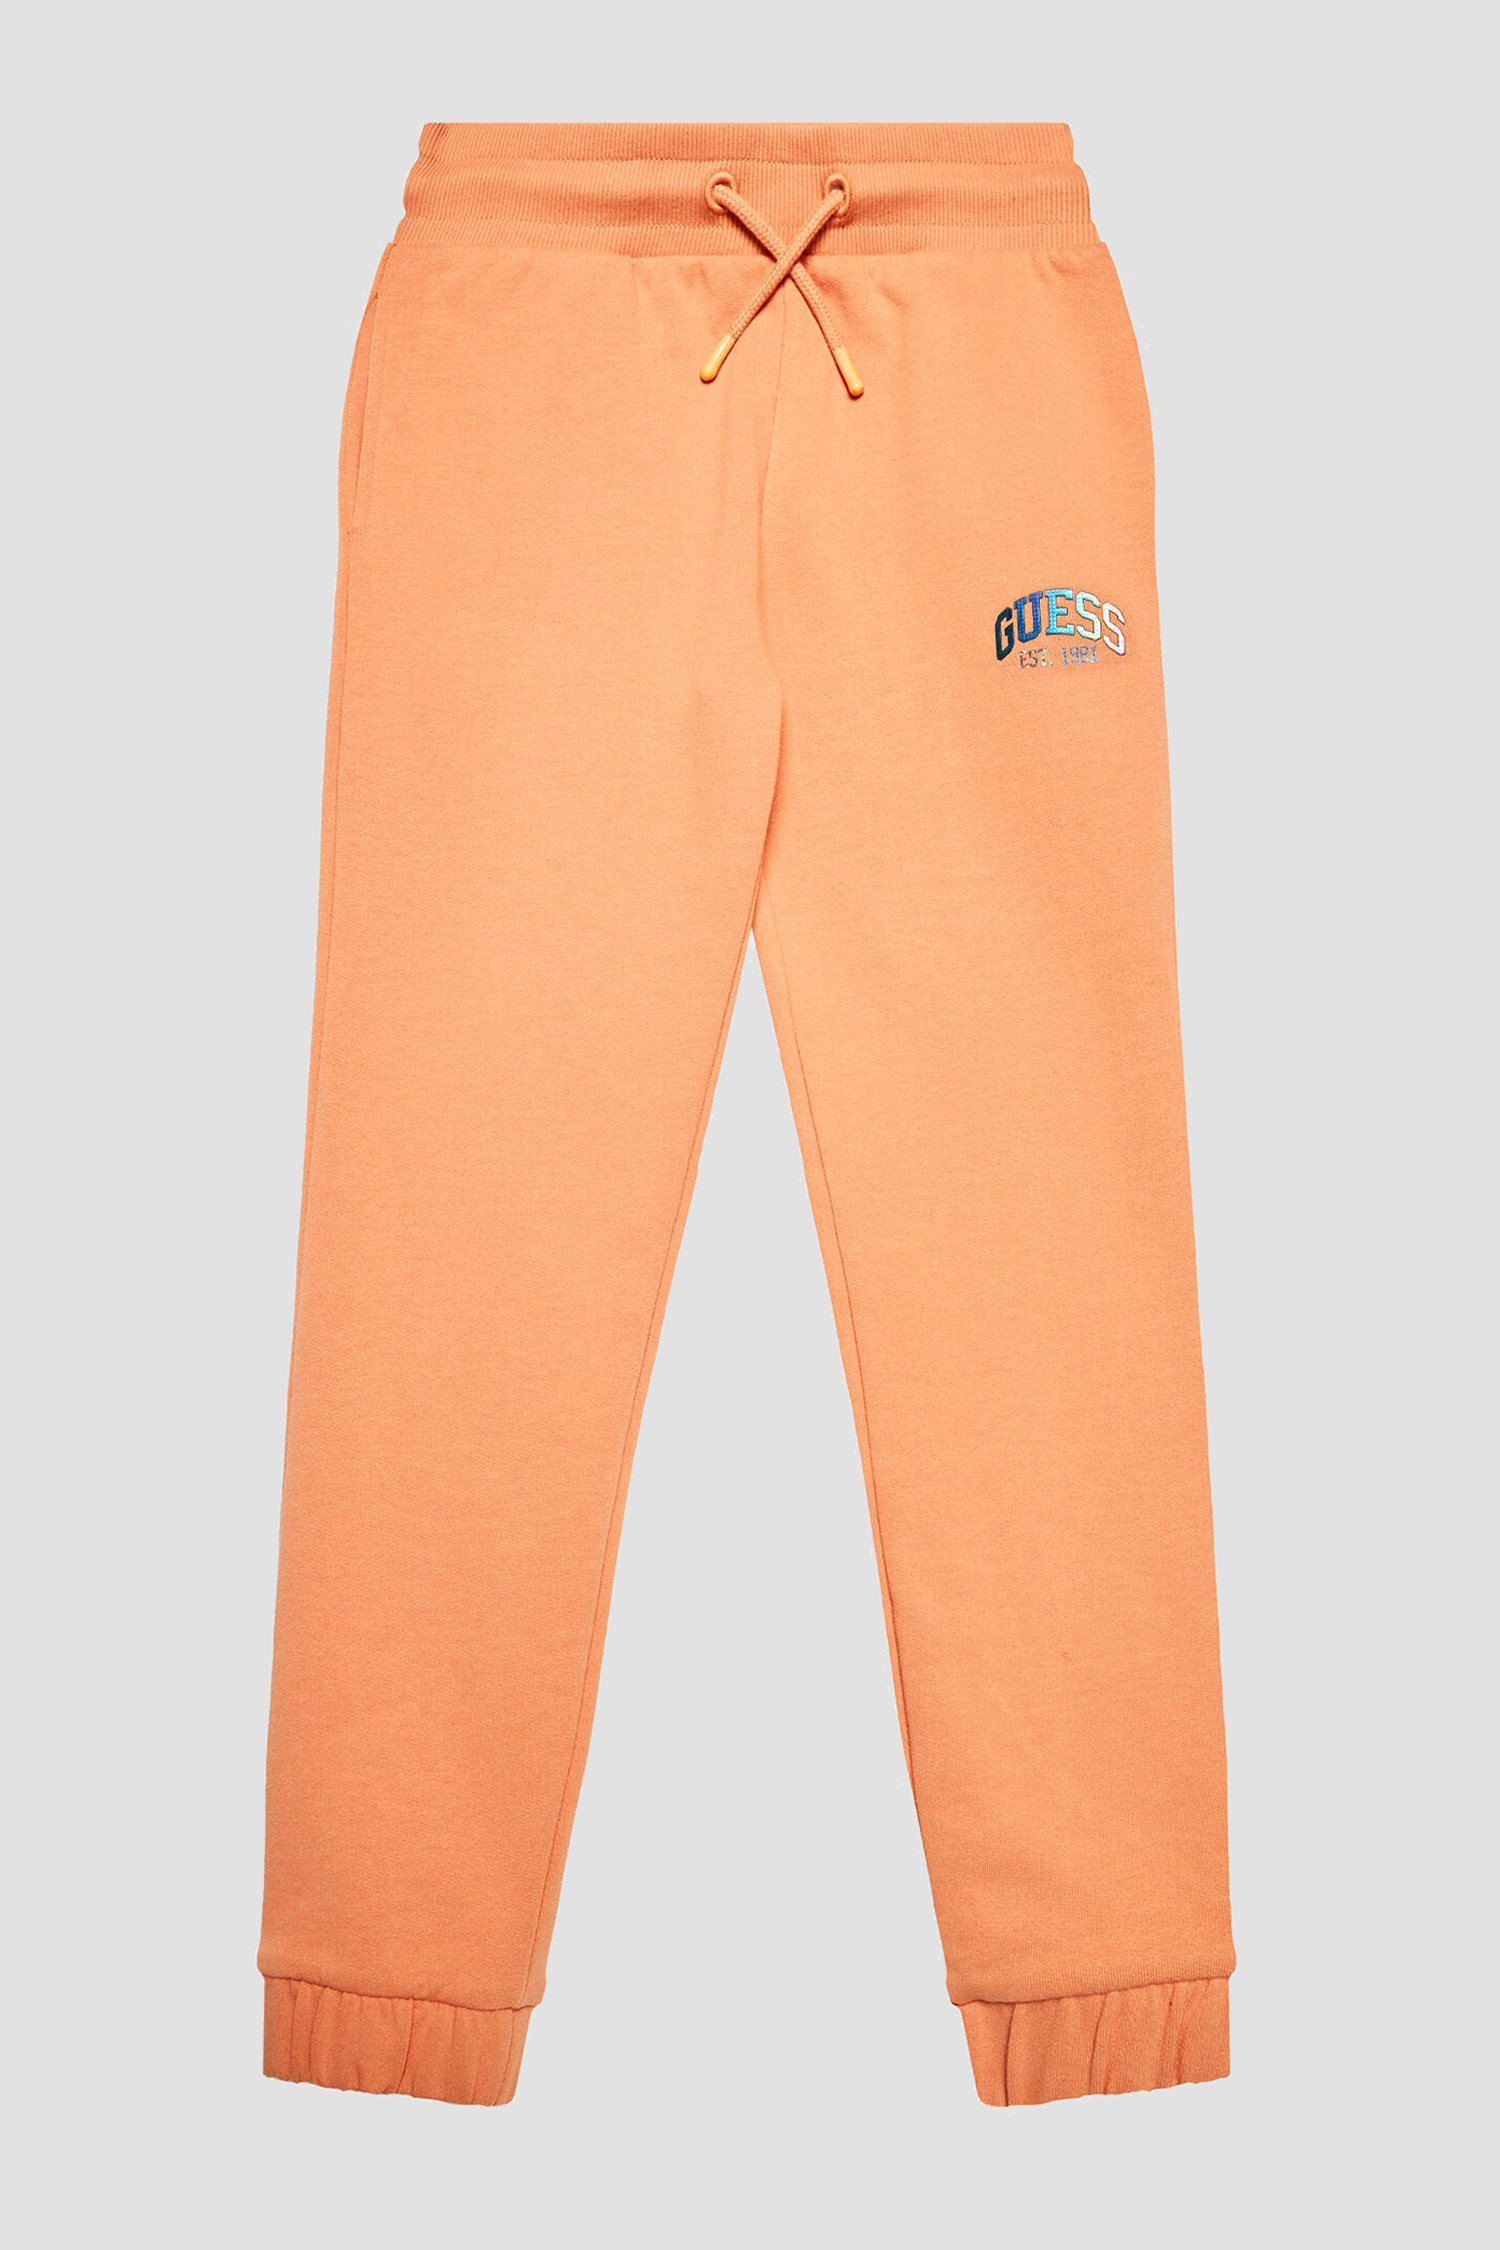 Детские оранжевые спортивные брюки Guеss Kids J3RQ11.KA6R0;G3I1